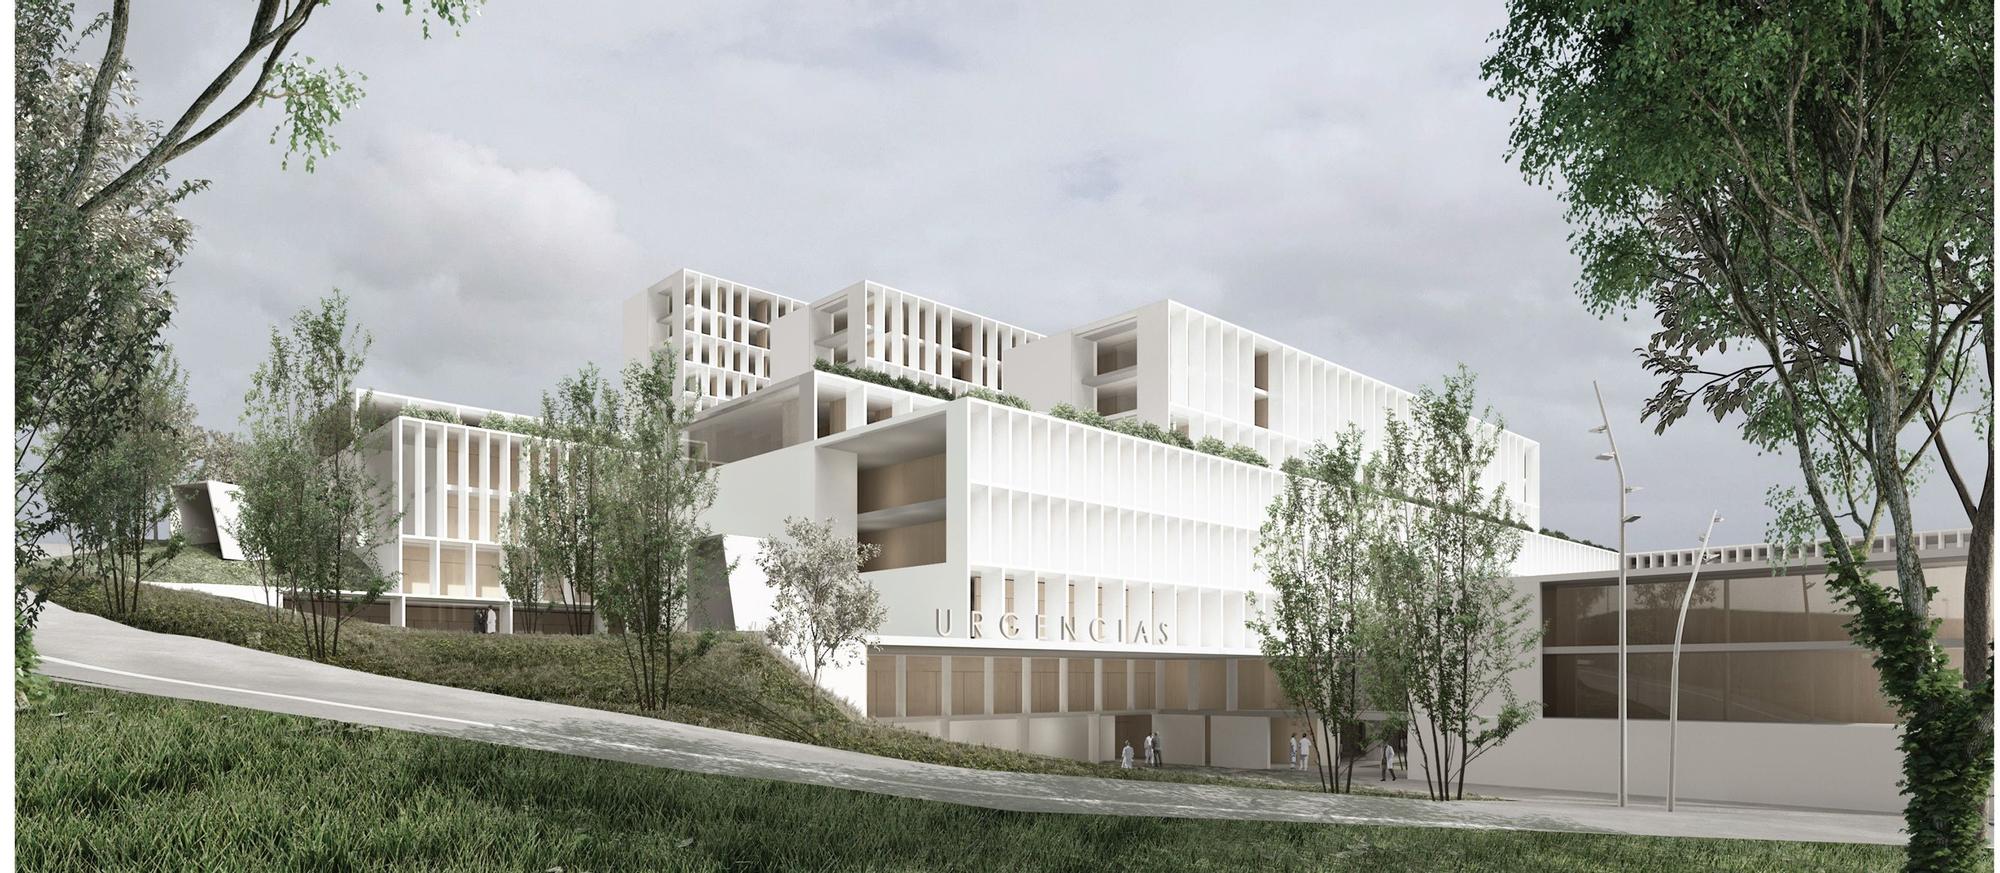 Recreación virtual del proyecto de ampliación del hospital de A Coruña